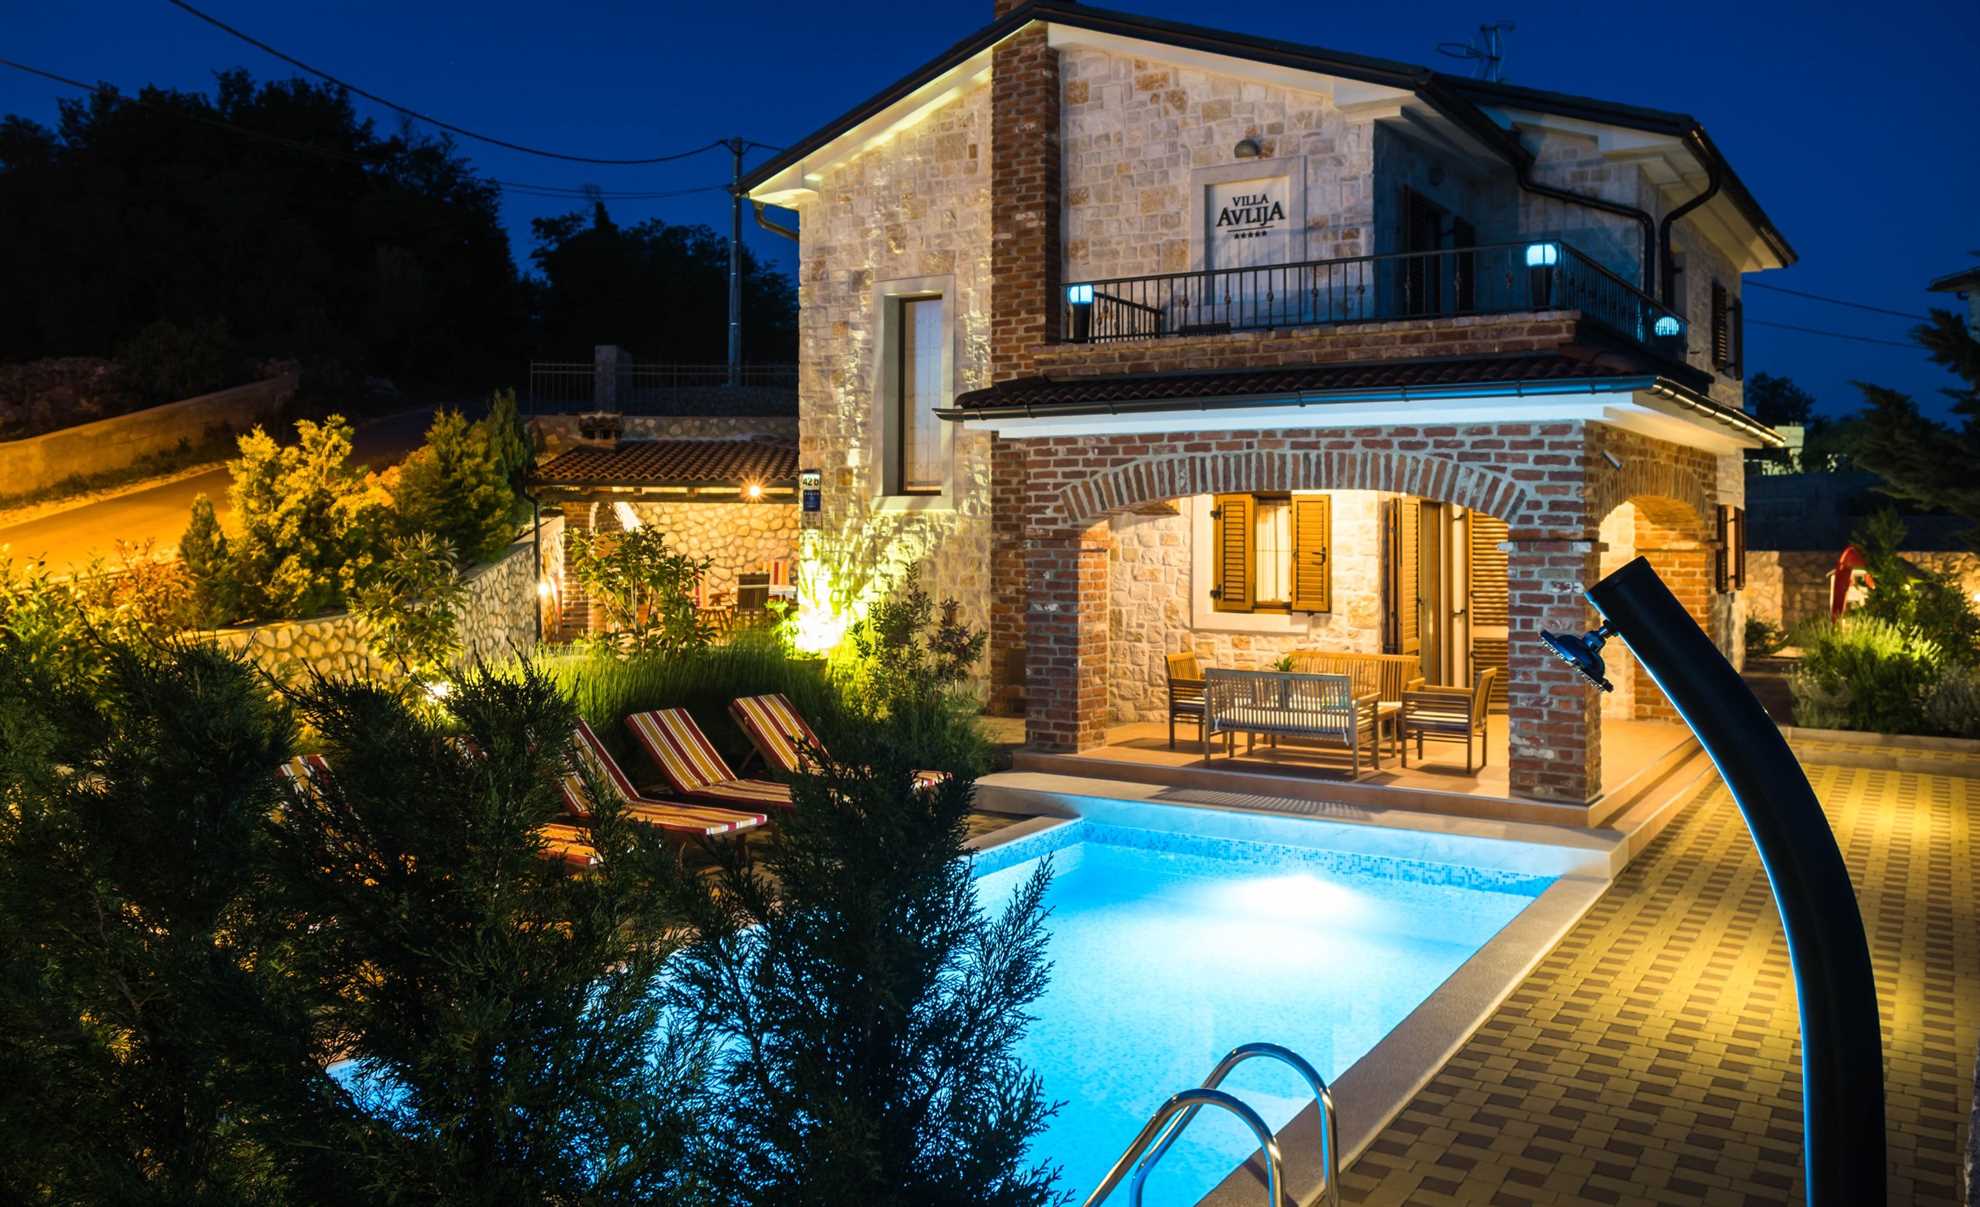 Stone villa Rustica with a swimming pool.